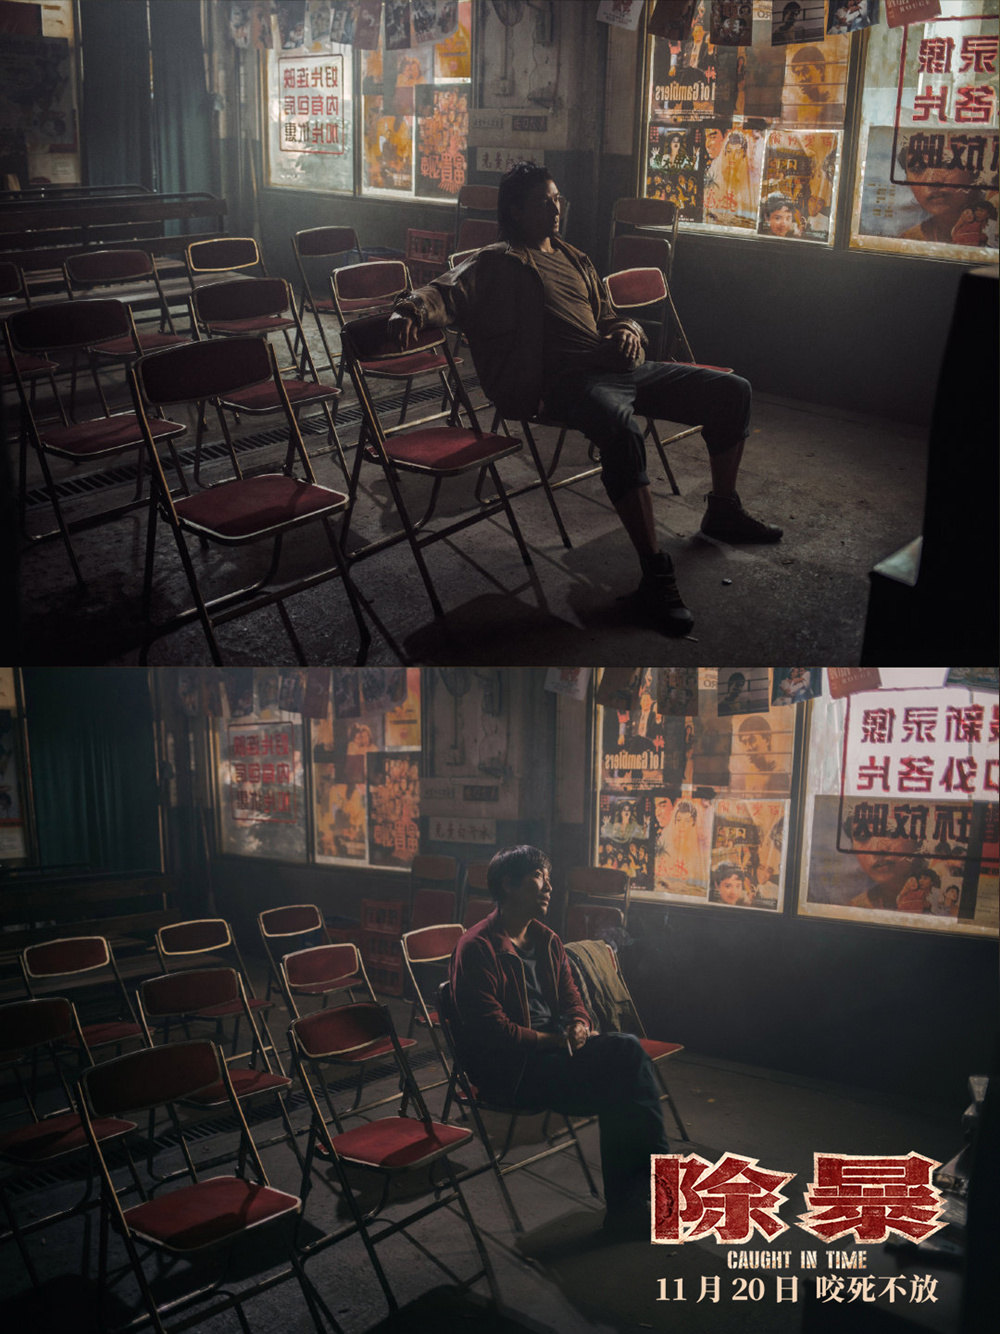 吴彦祖和王千源，分别坐在同一家录像厅内观看港片《喋血双雄》。